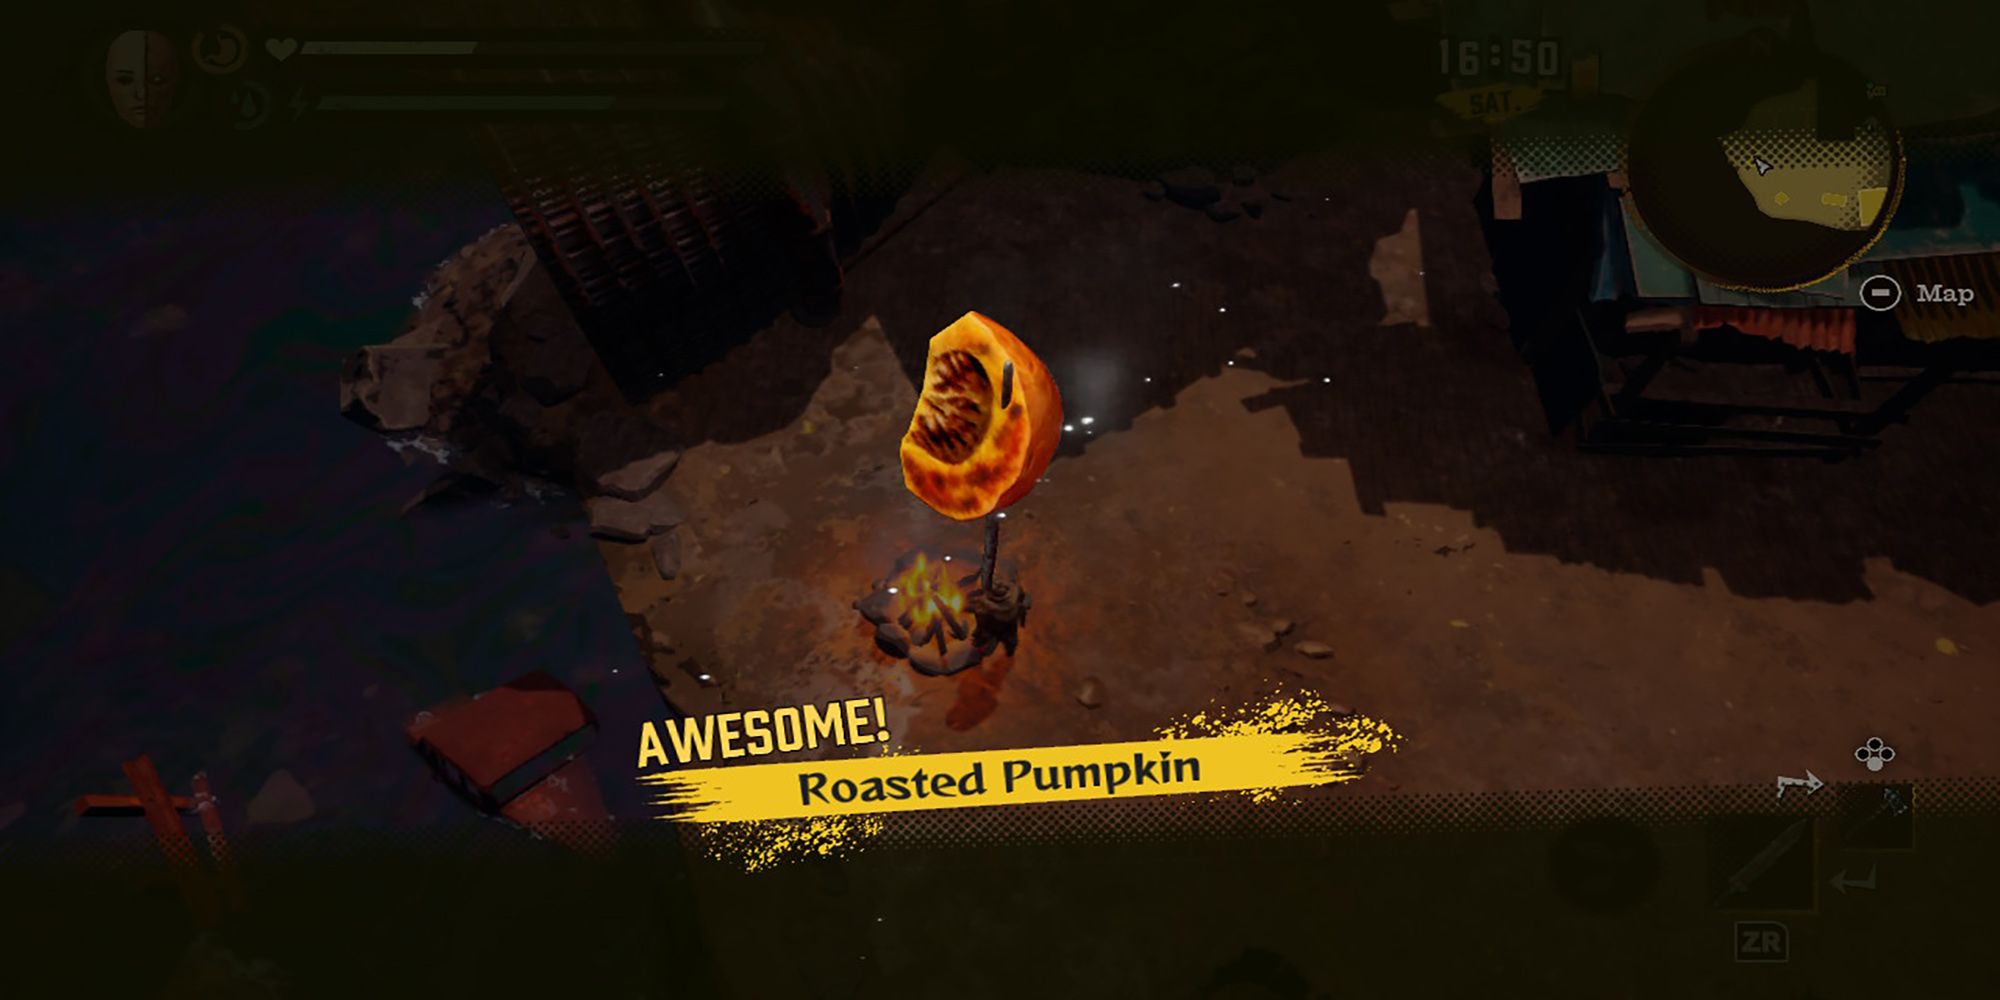 Roasted Pumpkin, fresh from Reid's fire pit in Deadcraft.